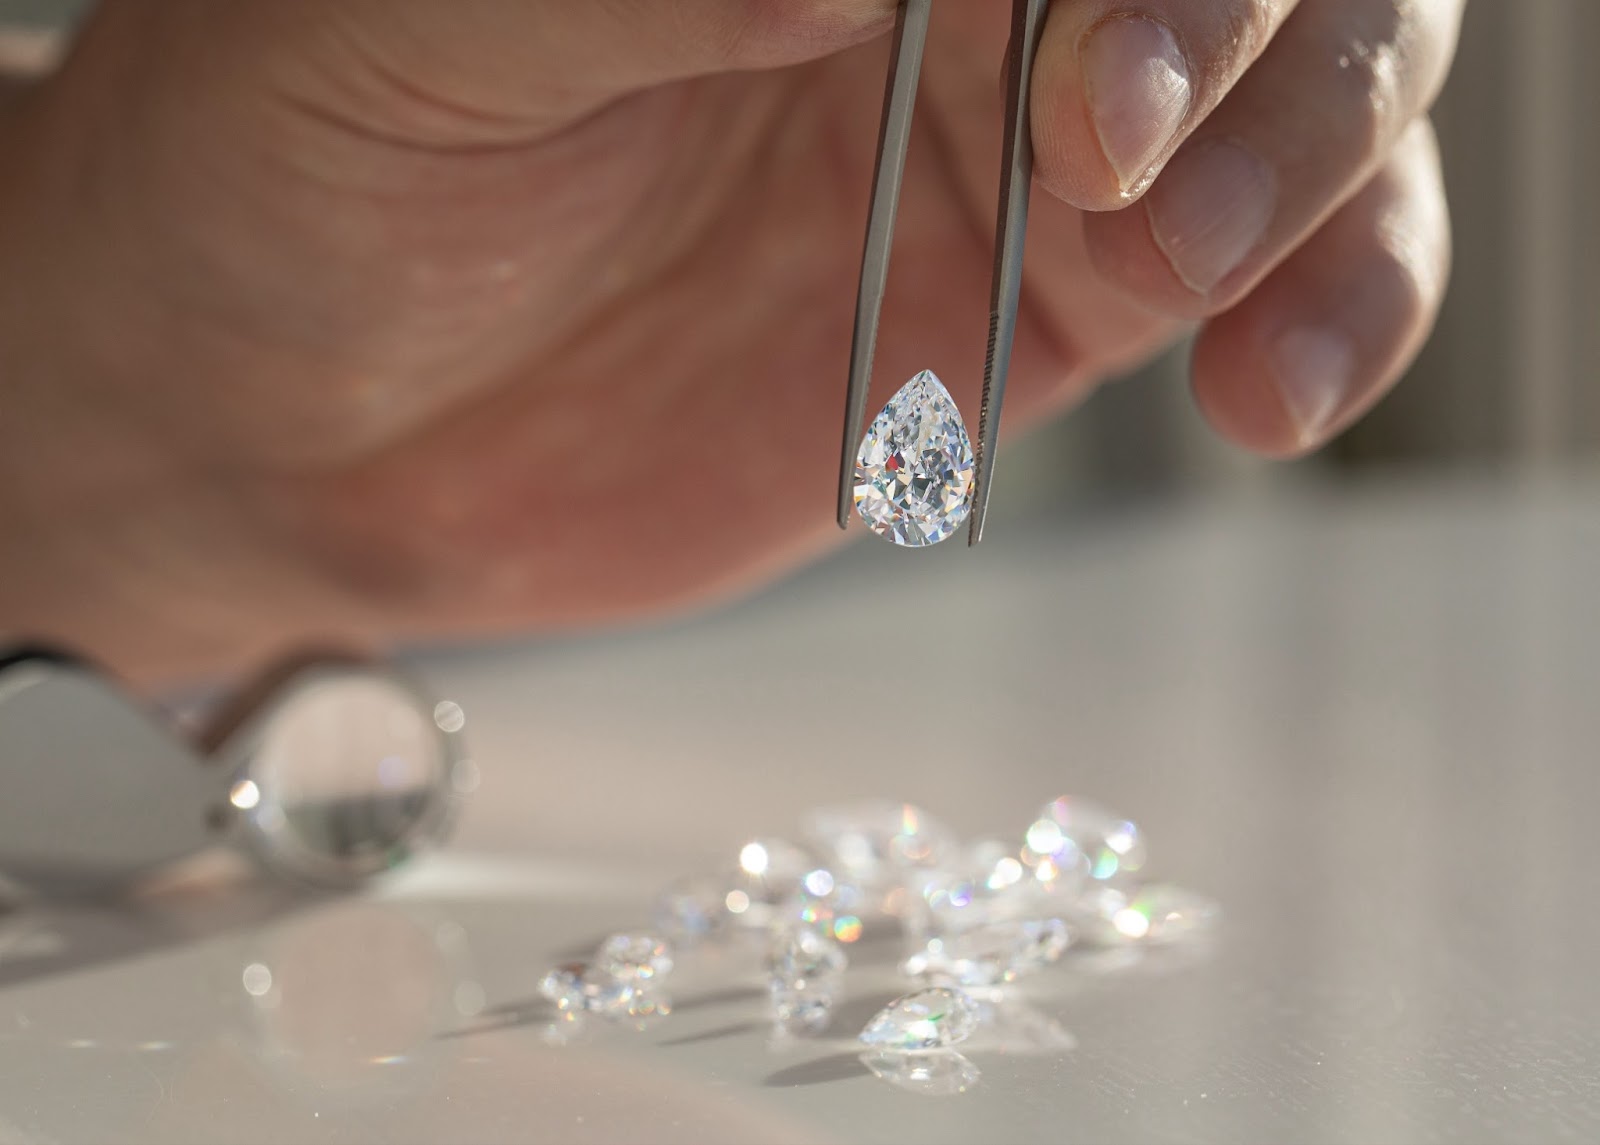 Изображение сияющего бриллиантового колье Aquae Jewels, сопровождаемое сертификатом подлинности, символизирующим приверженность бренда к совершенству и честности.